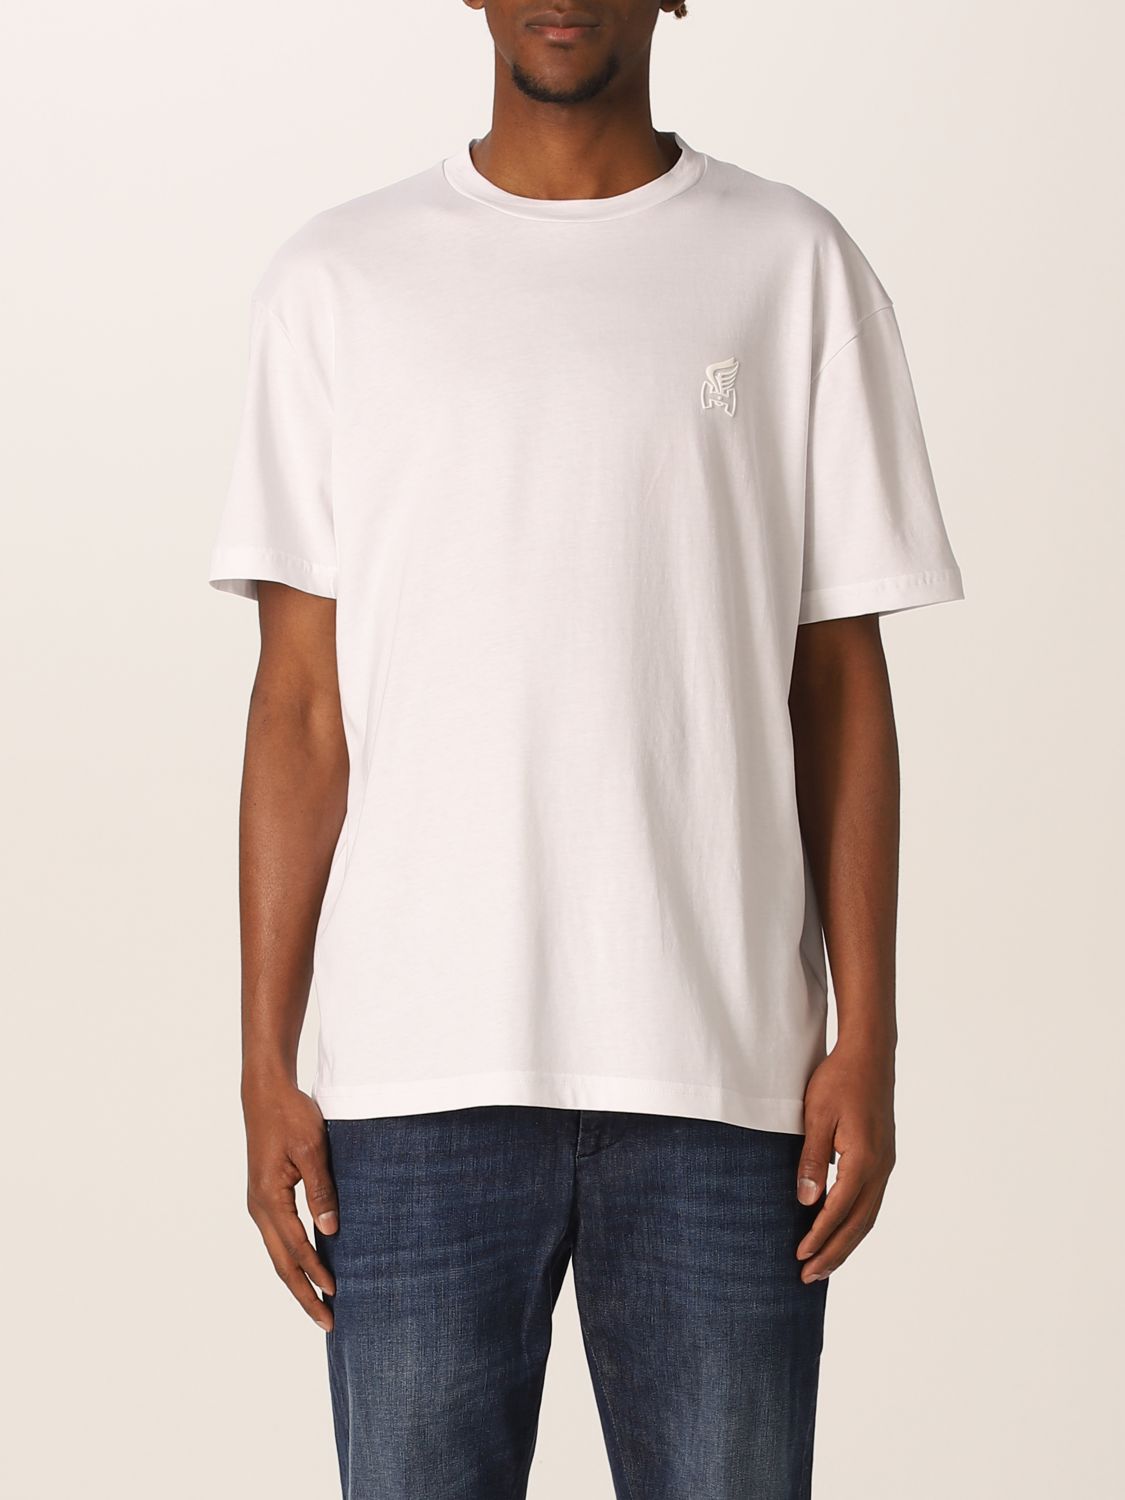 T-shirt Hogan: Basic Hogan T-shirt white 1